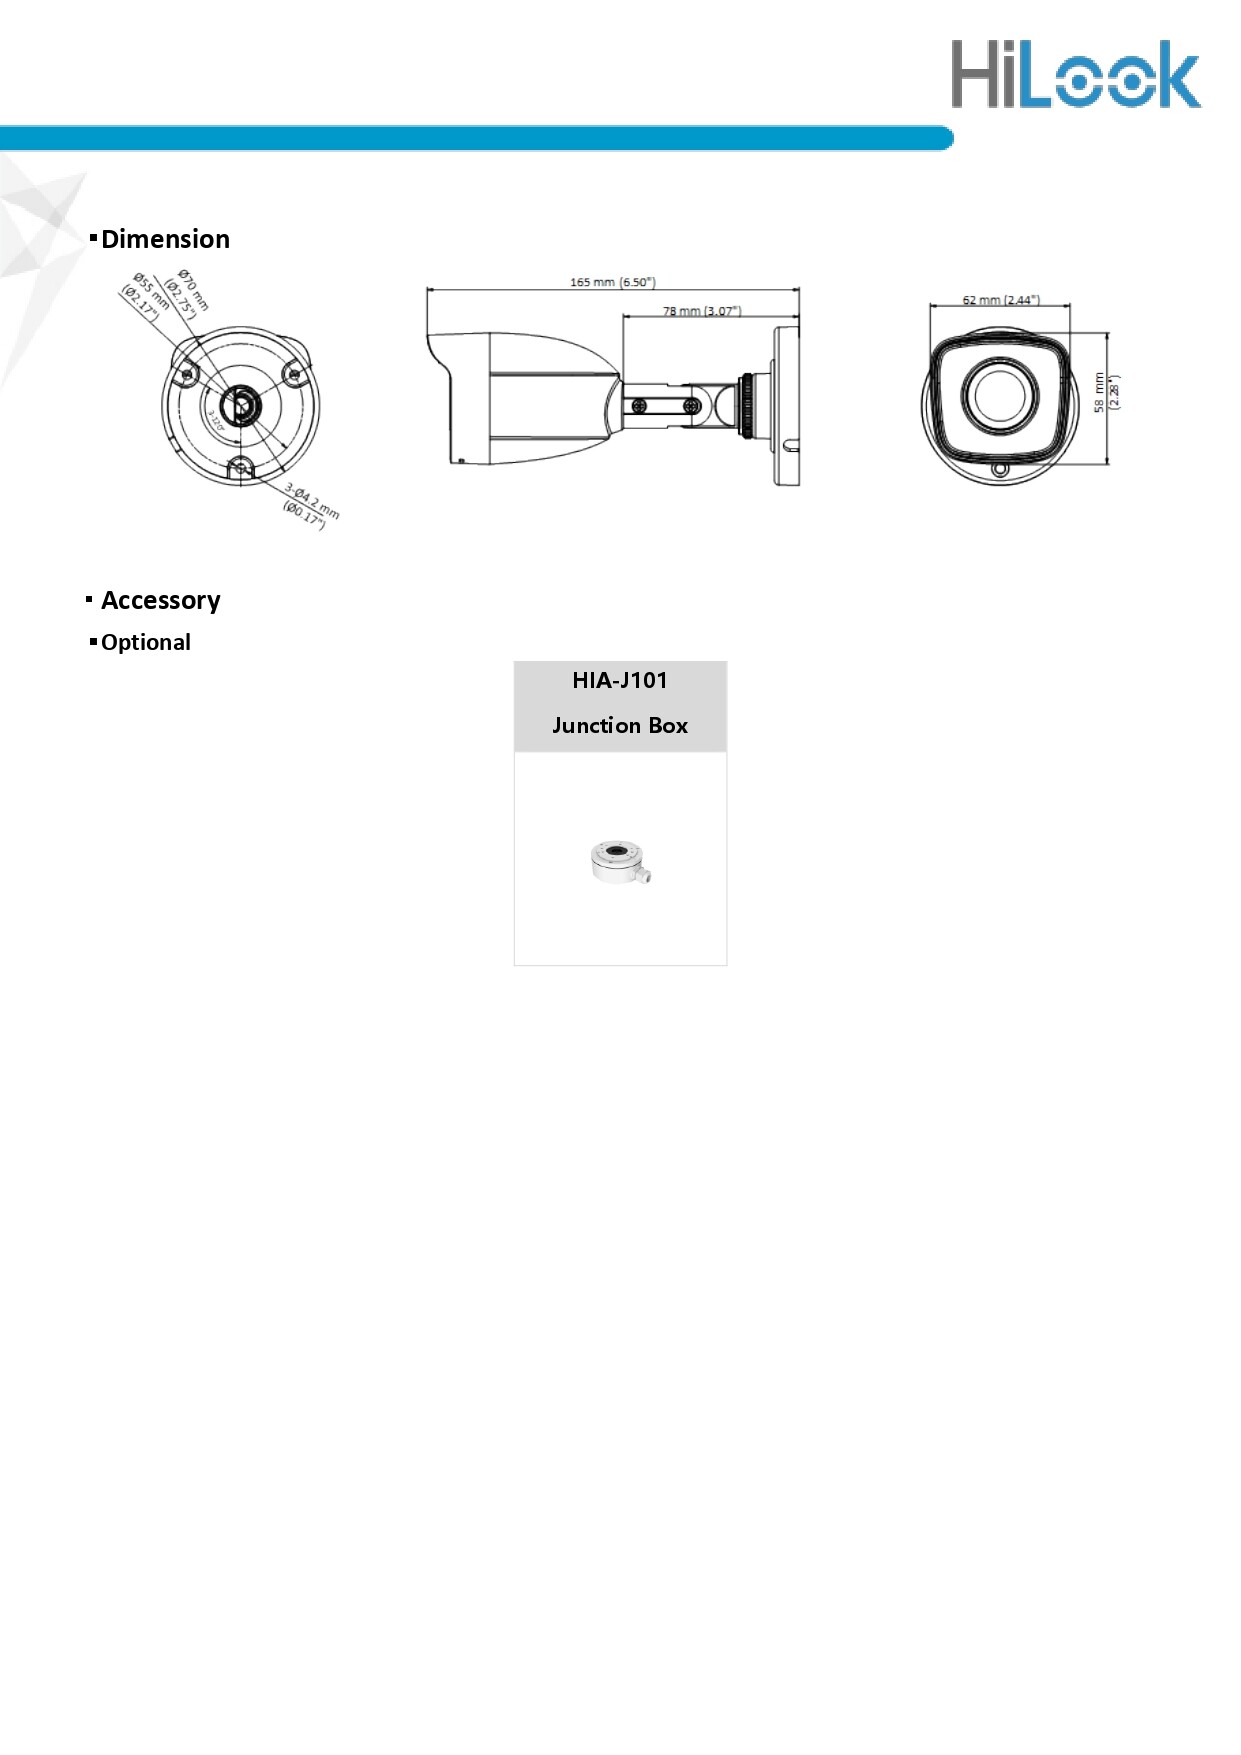 ภาพที่ให้รายละเอียดเกี่ยวกับ Hikvision & HILOOK ชุดกล้องวงจรปิด 2MP รุ่น iDS-7204HQHI-M1/S + THC-B120-C จำนวน 4 ตัว BY N.T Computer